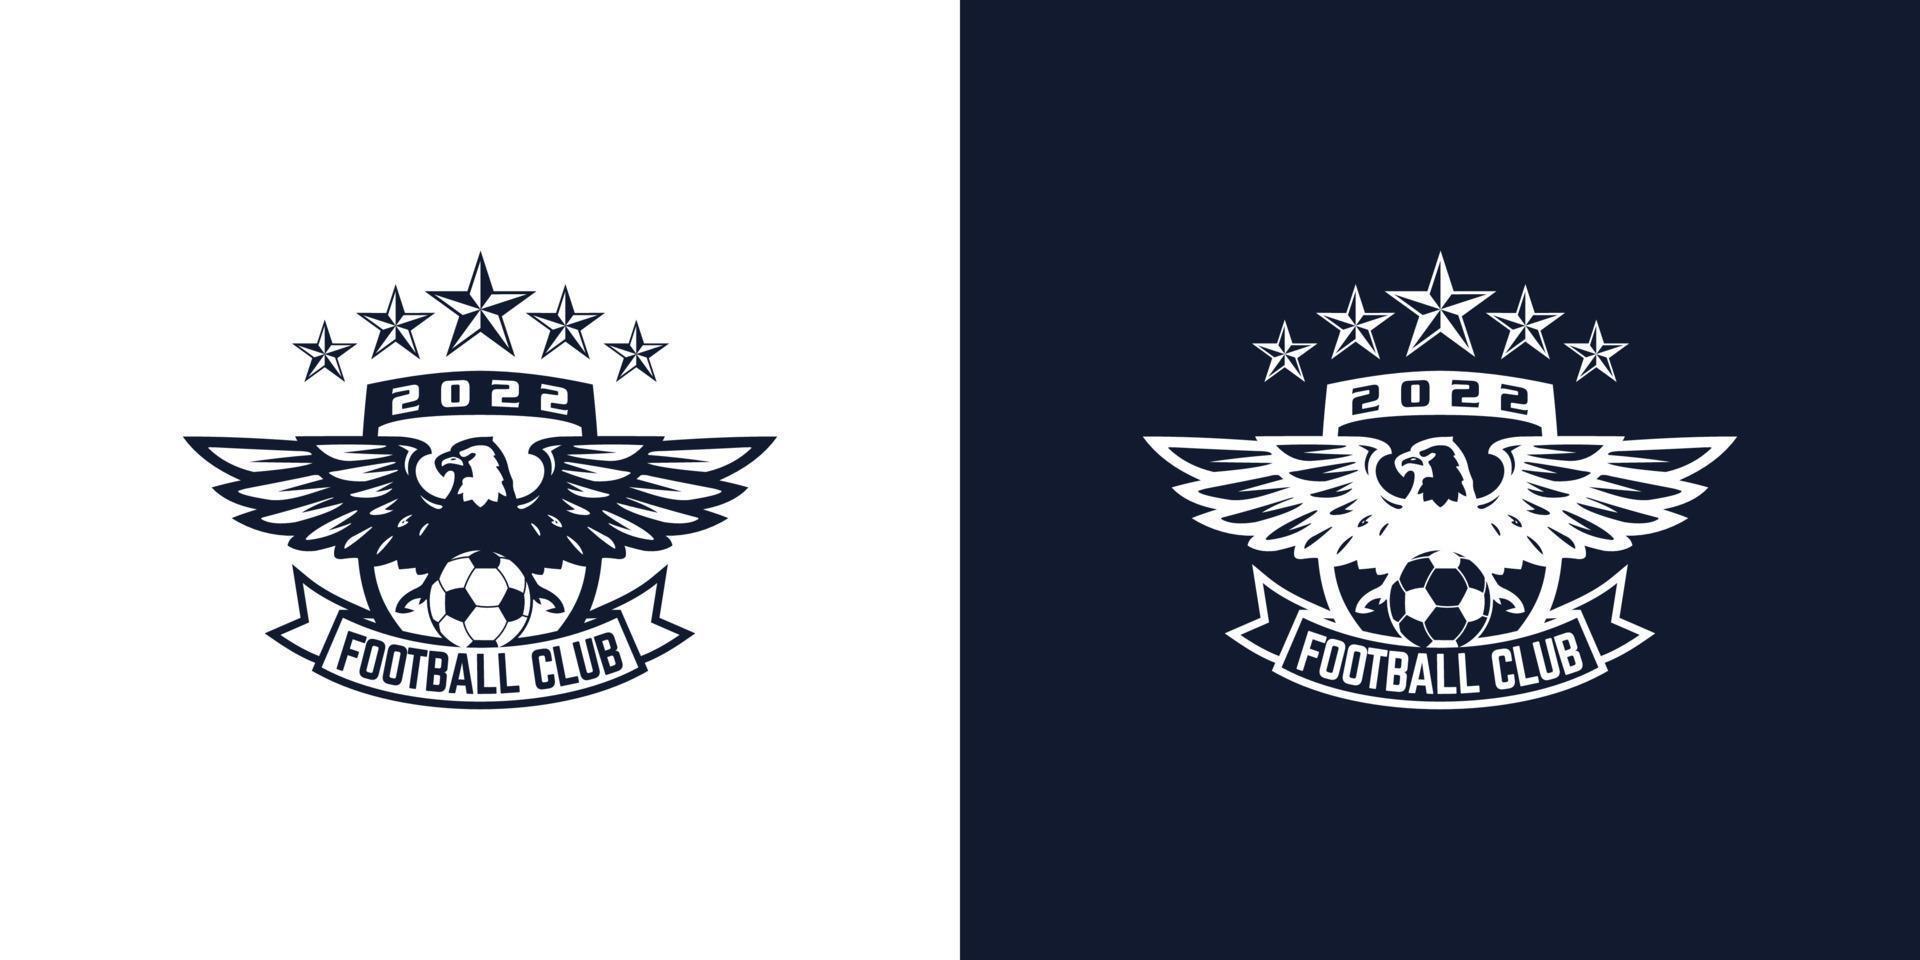 voetbal club monochroom insigne met boos adelaar mascotte Holding club naam opschrift in wijnoogst stijl geïsoleerd vector illustratie